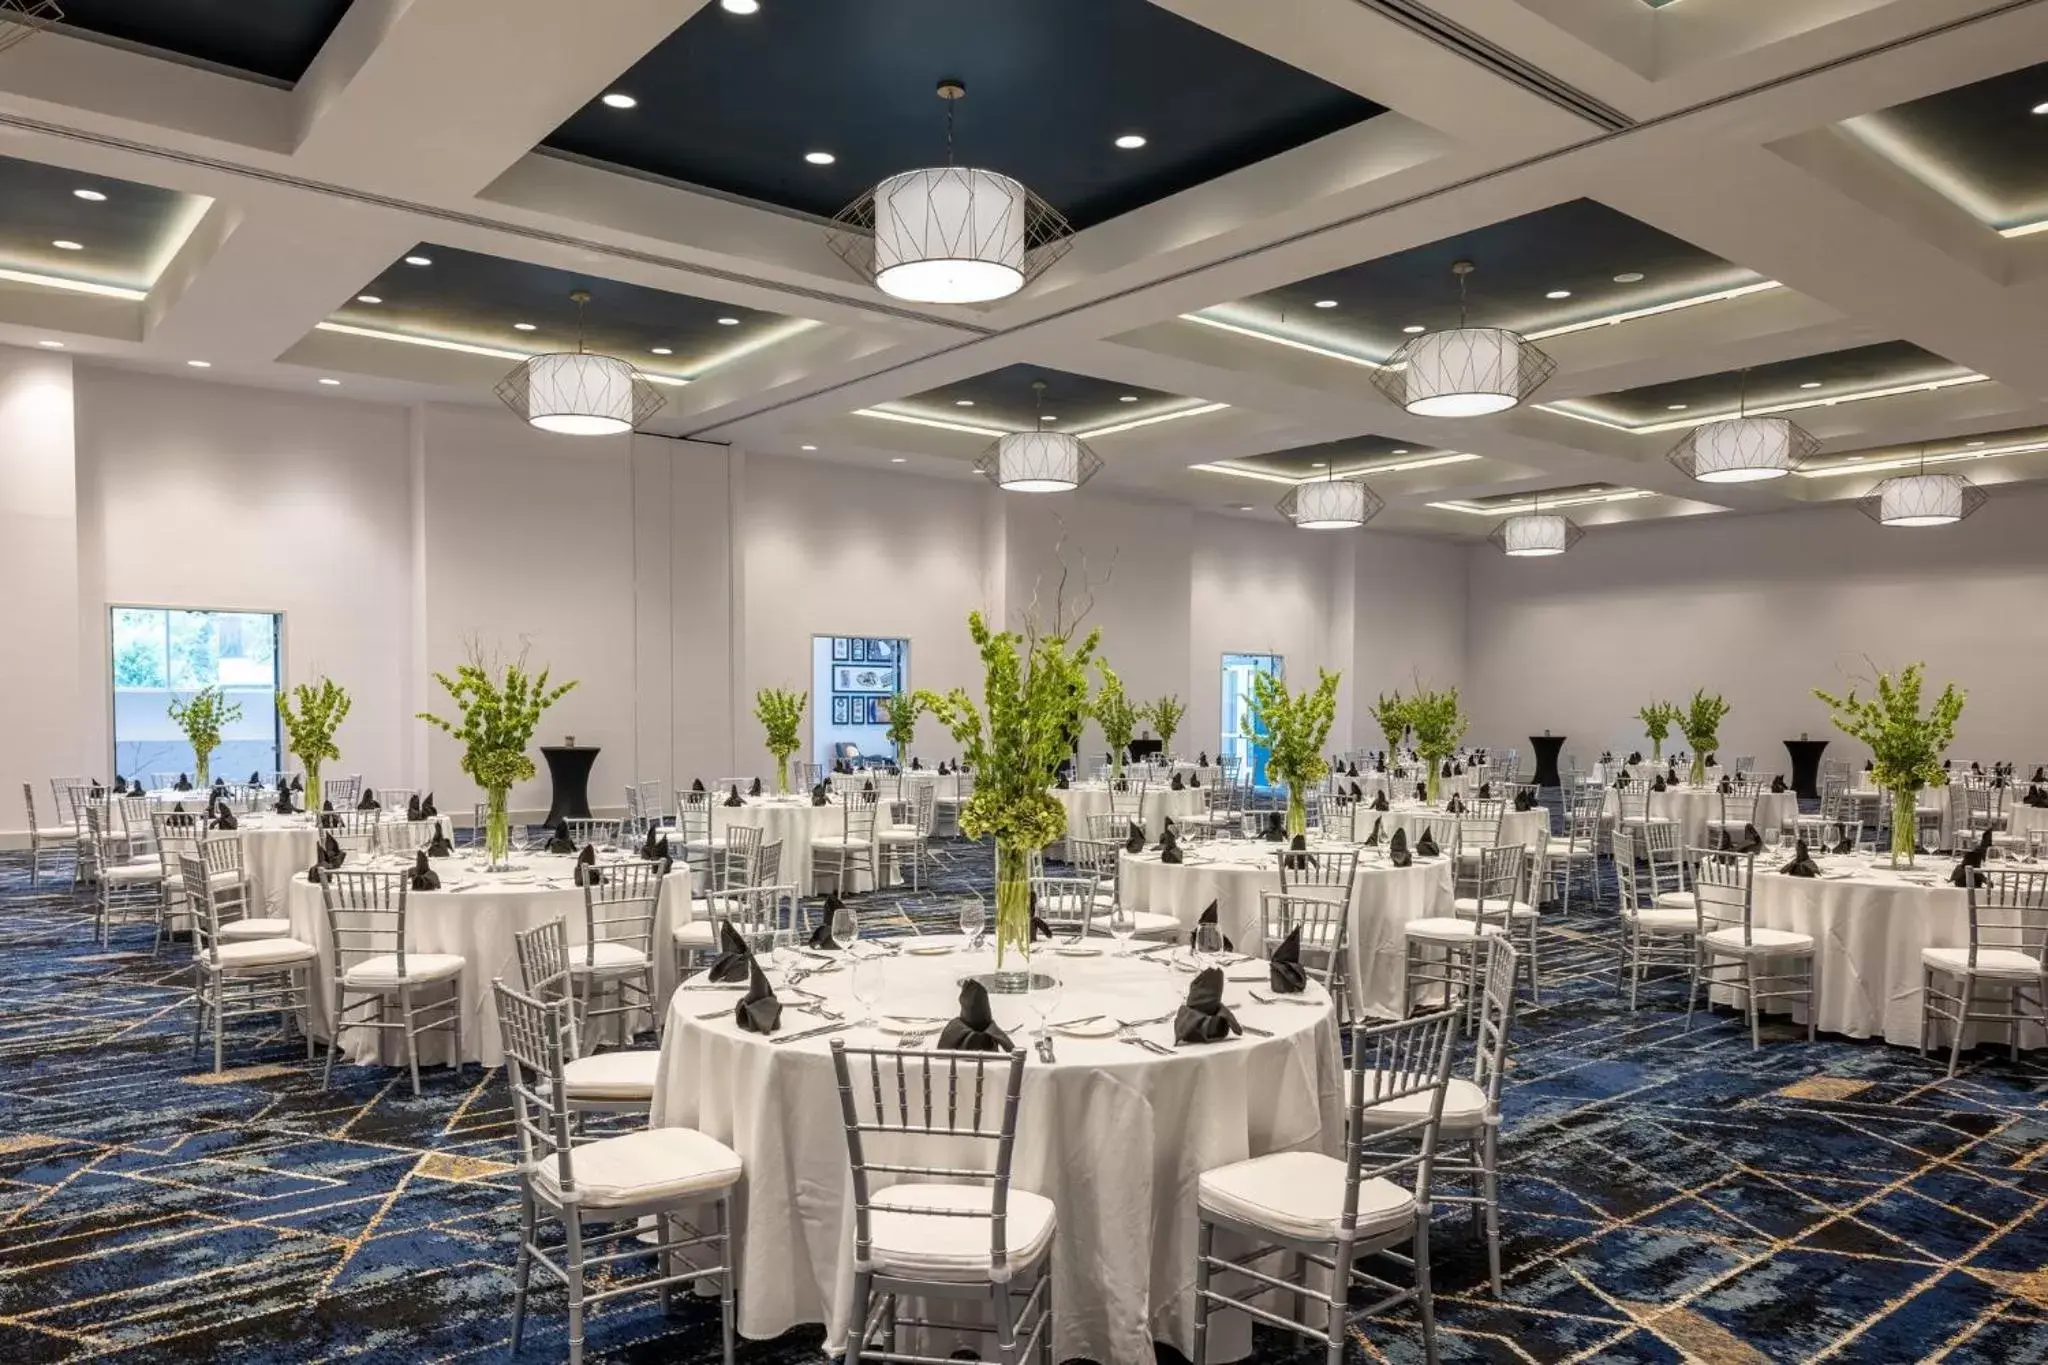 Banquet/Function facilities, Banquet Facilities in Crowne Plaza Atlanta Ne Norcross